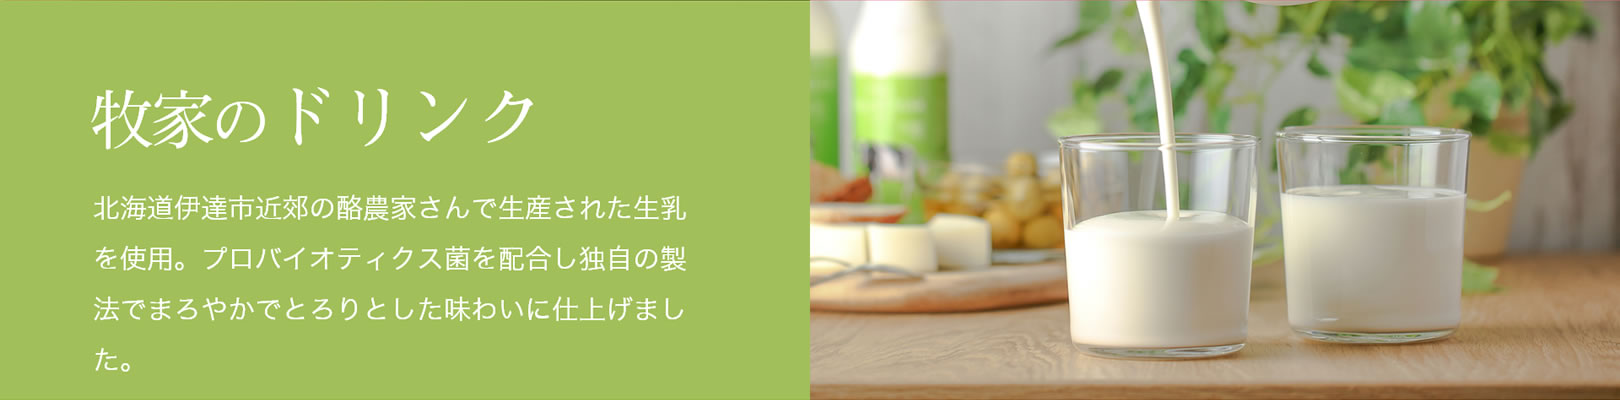 牧家のドリンク｜北海道伊達市近郊の酪農家さんで生産された生乳を使用。プロバイオティクス菌を配合し独自の製法でまろやかでとろりとした味わいに仕上げました。